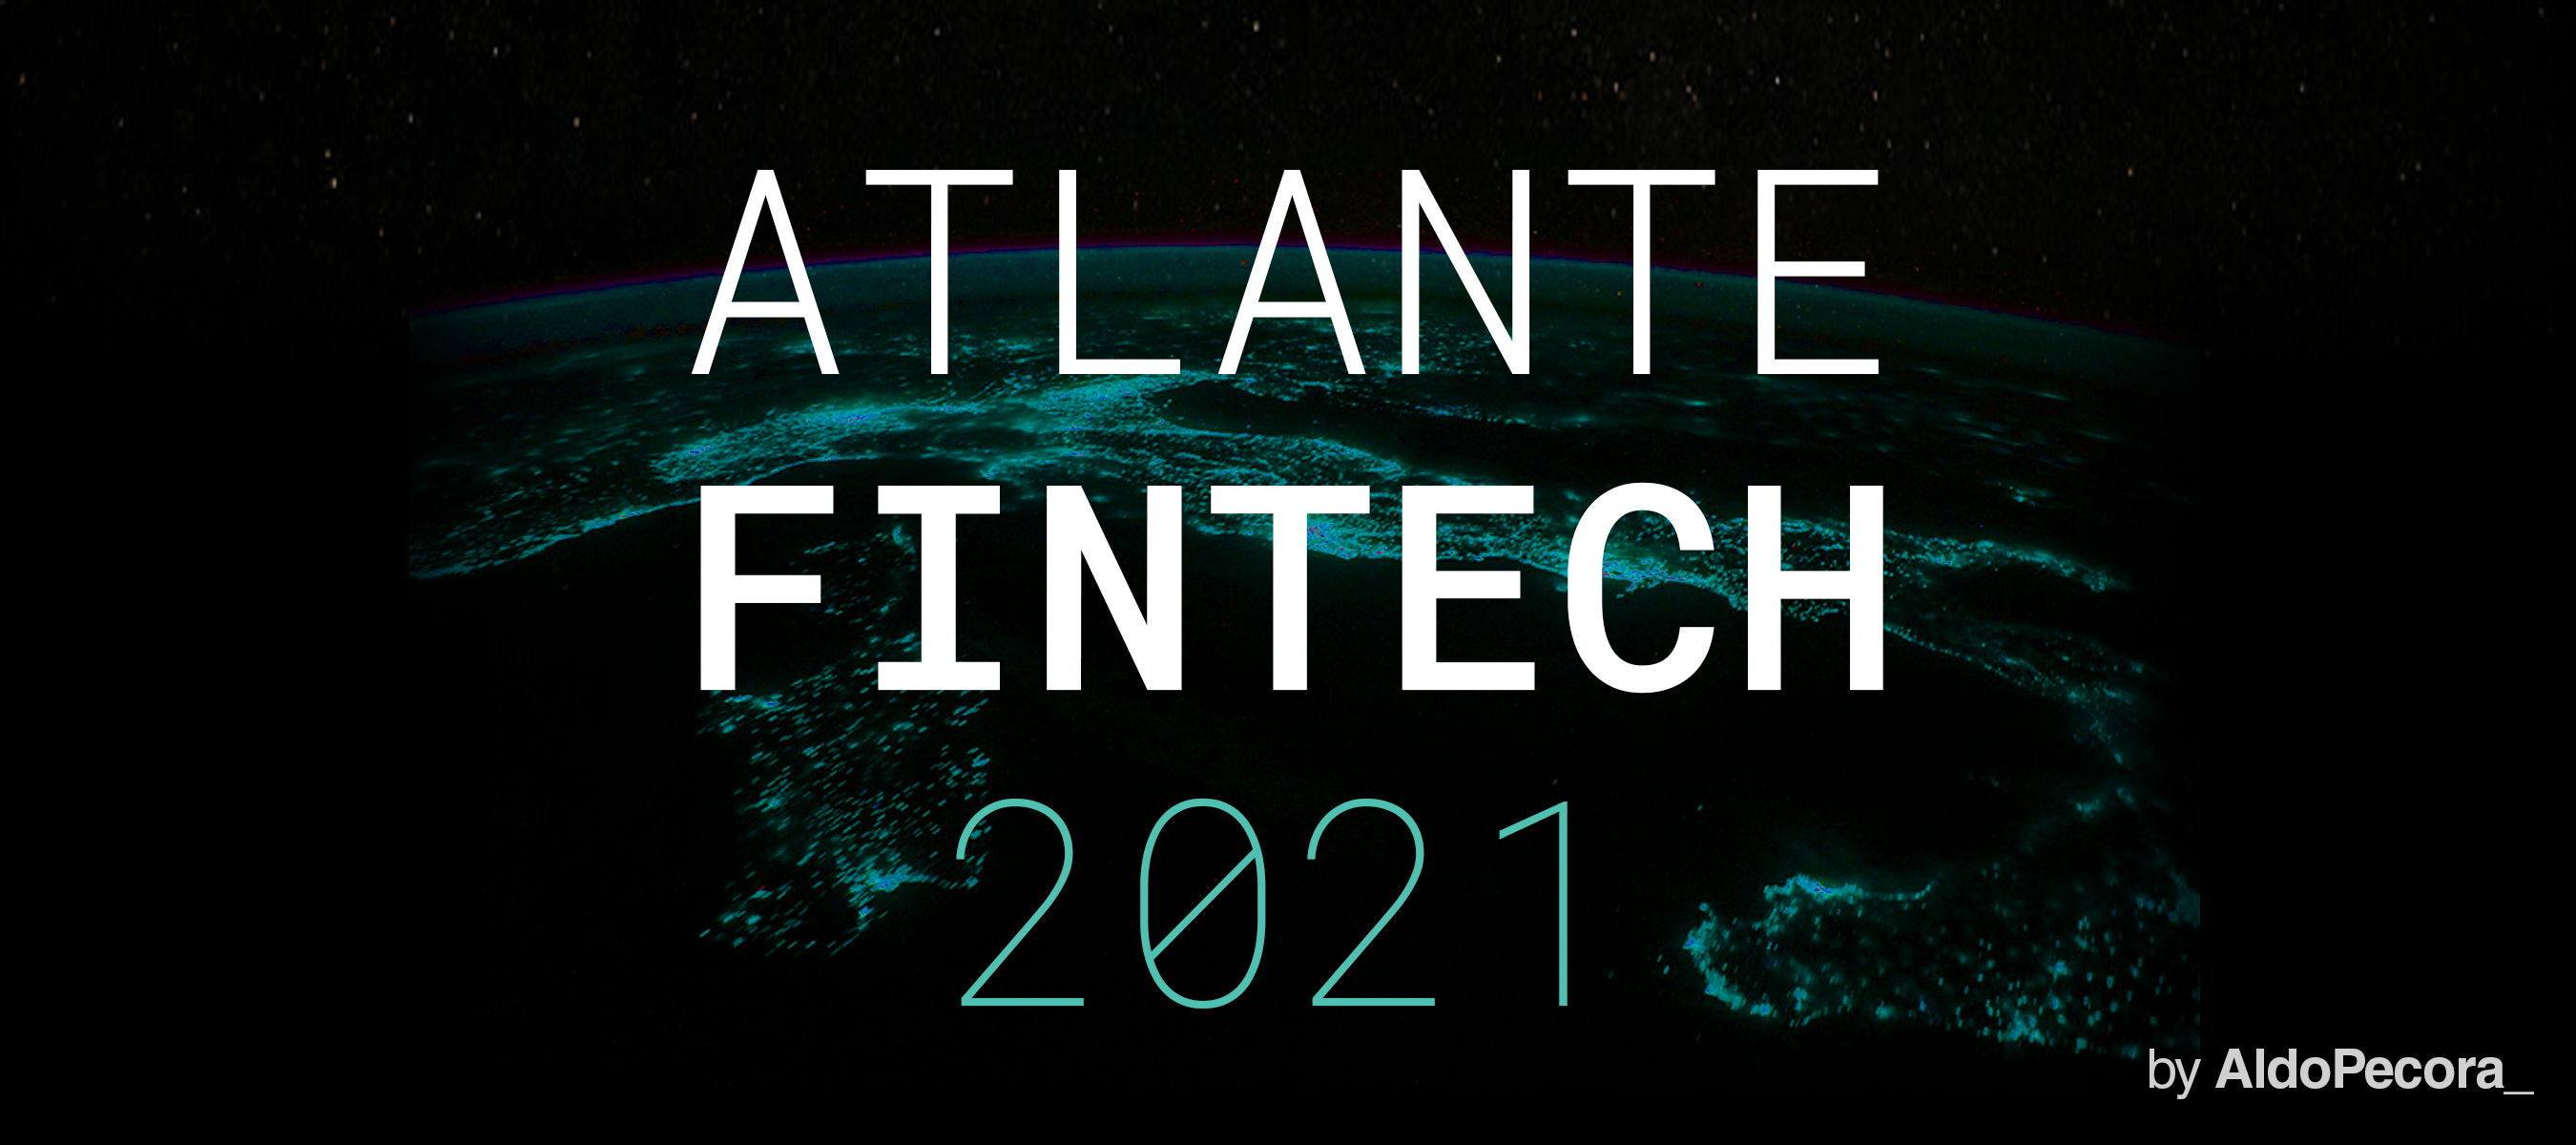 Atlante Fintech 2021